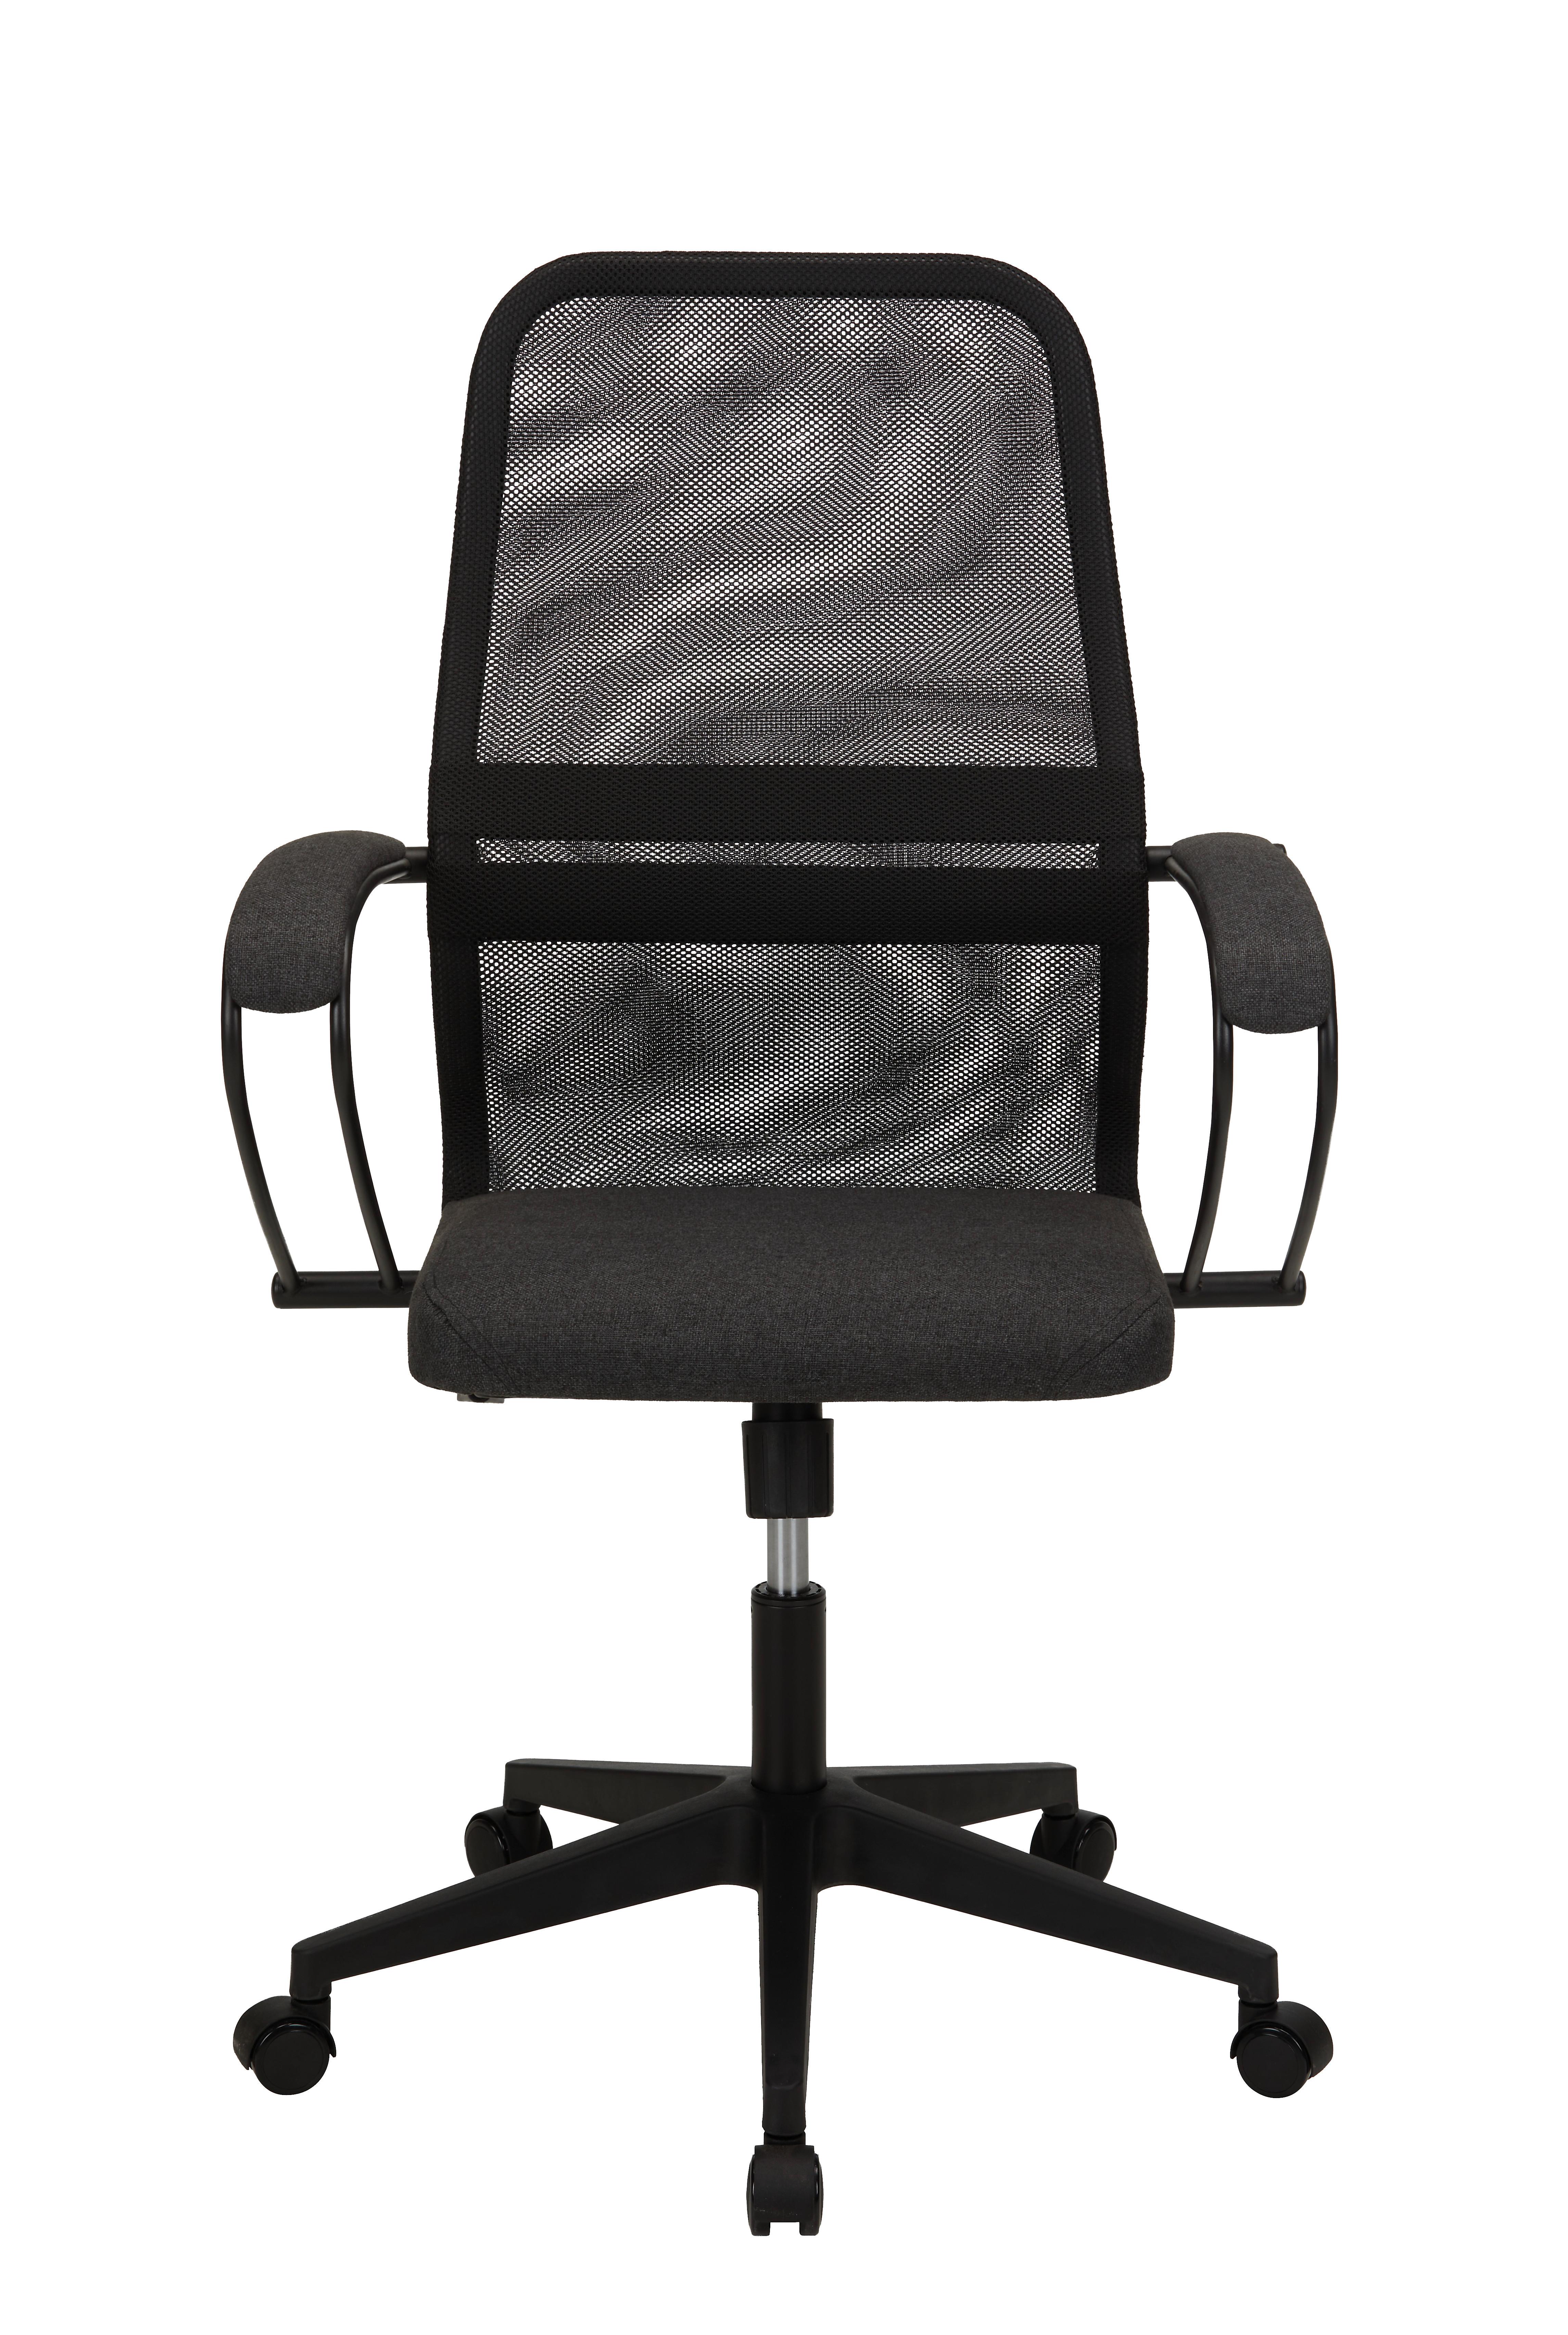 Kancelárska Stolička Čierna Farba - čierna/sivá, Moderný, kov/textil (68/118-130/71cm) - Premium Living